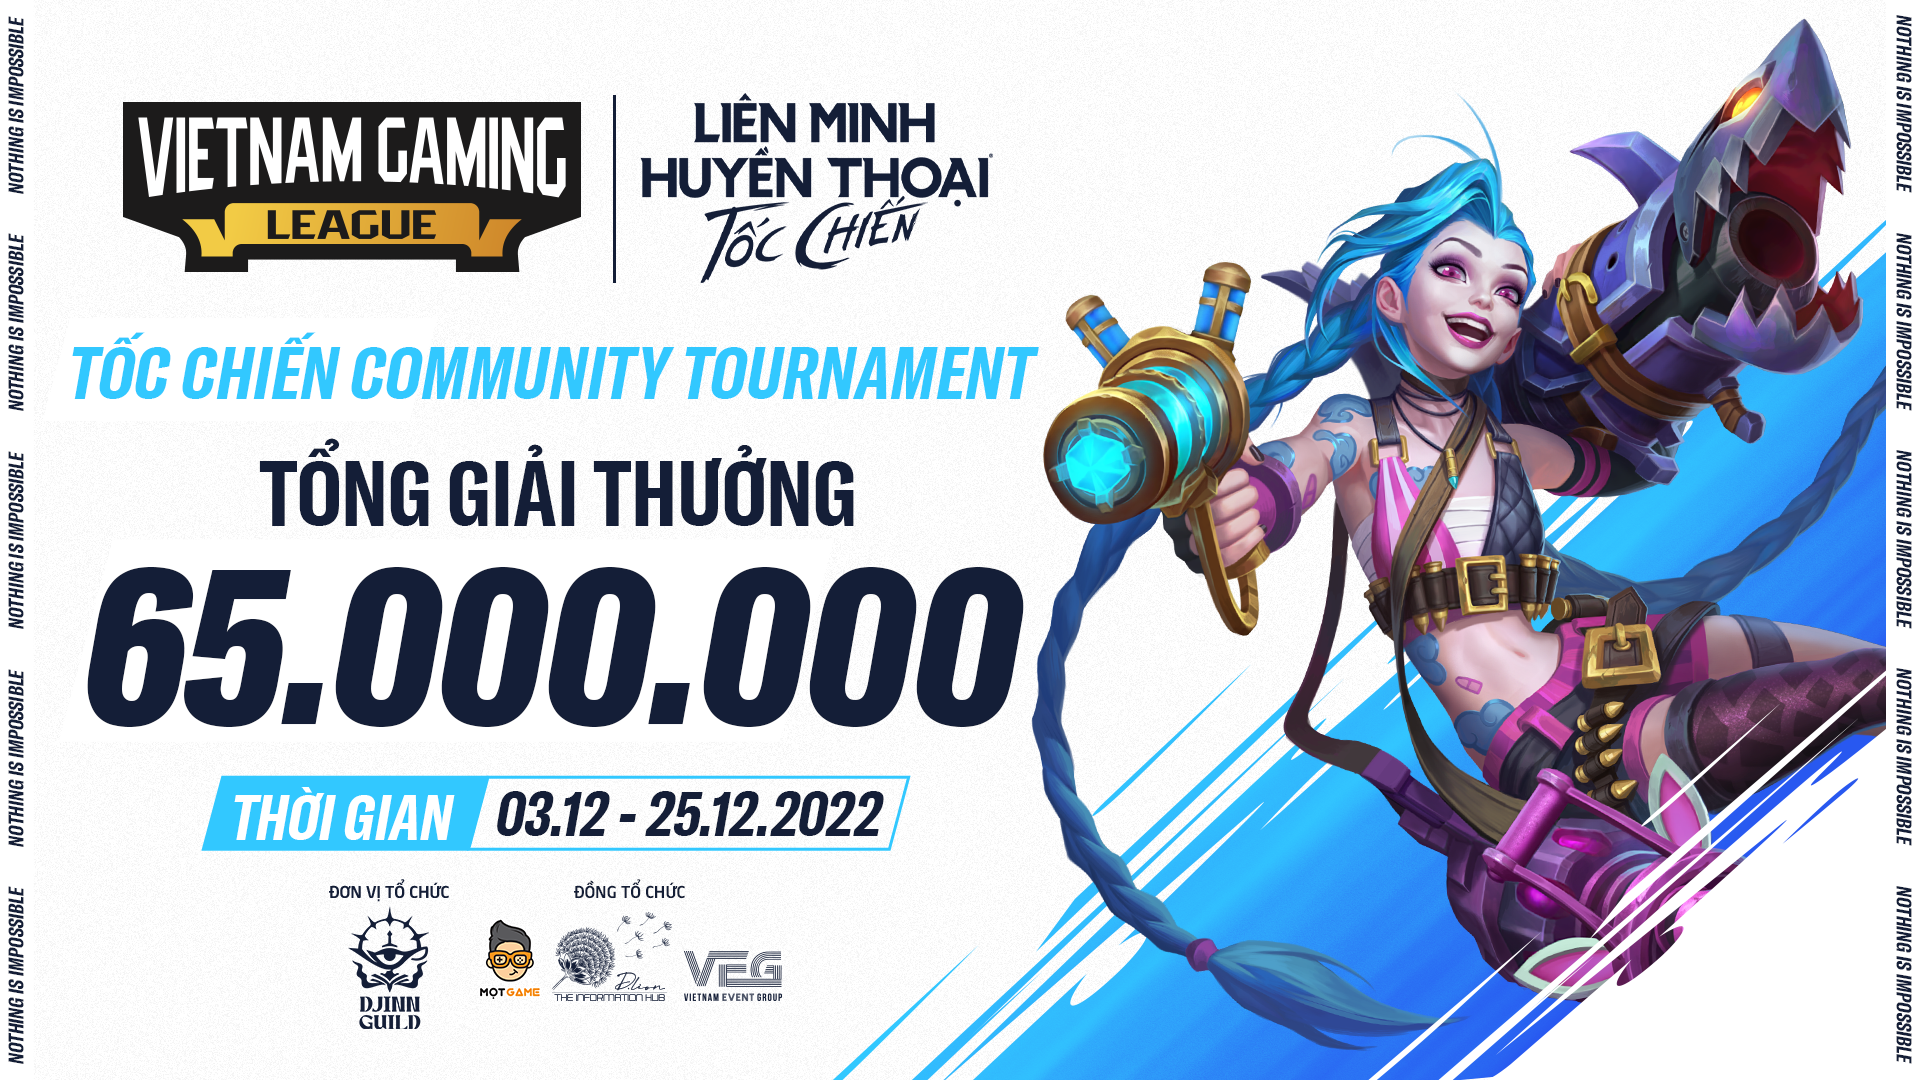 Vietnam Gaming League - Tốc Chiến Community Tournament chính thức mở đăng ký